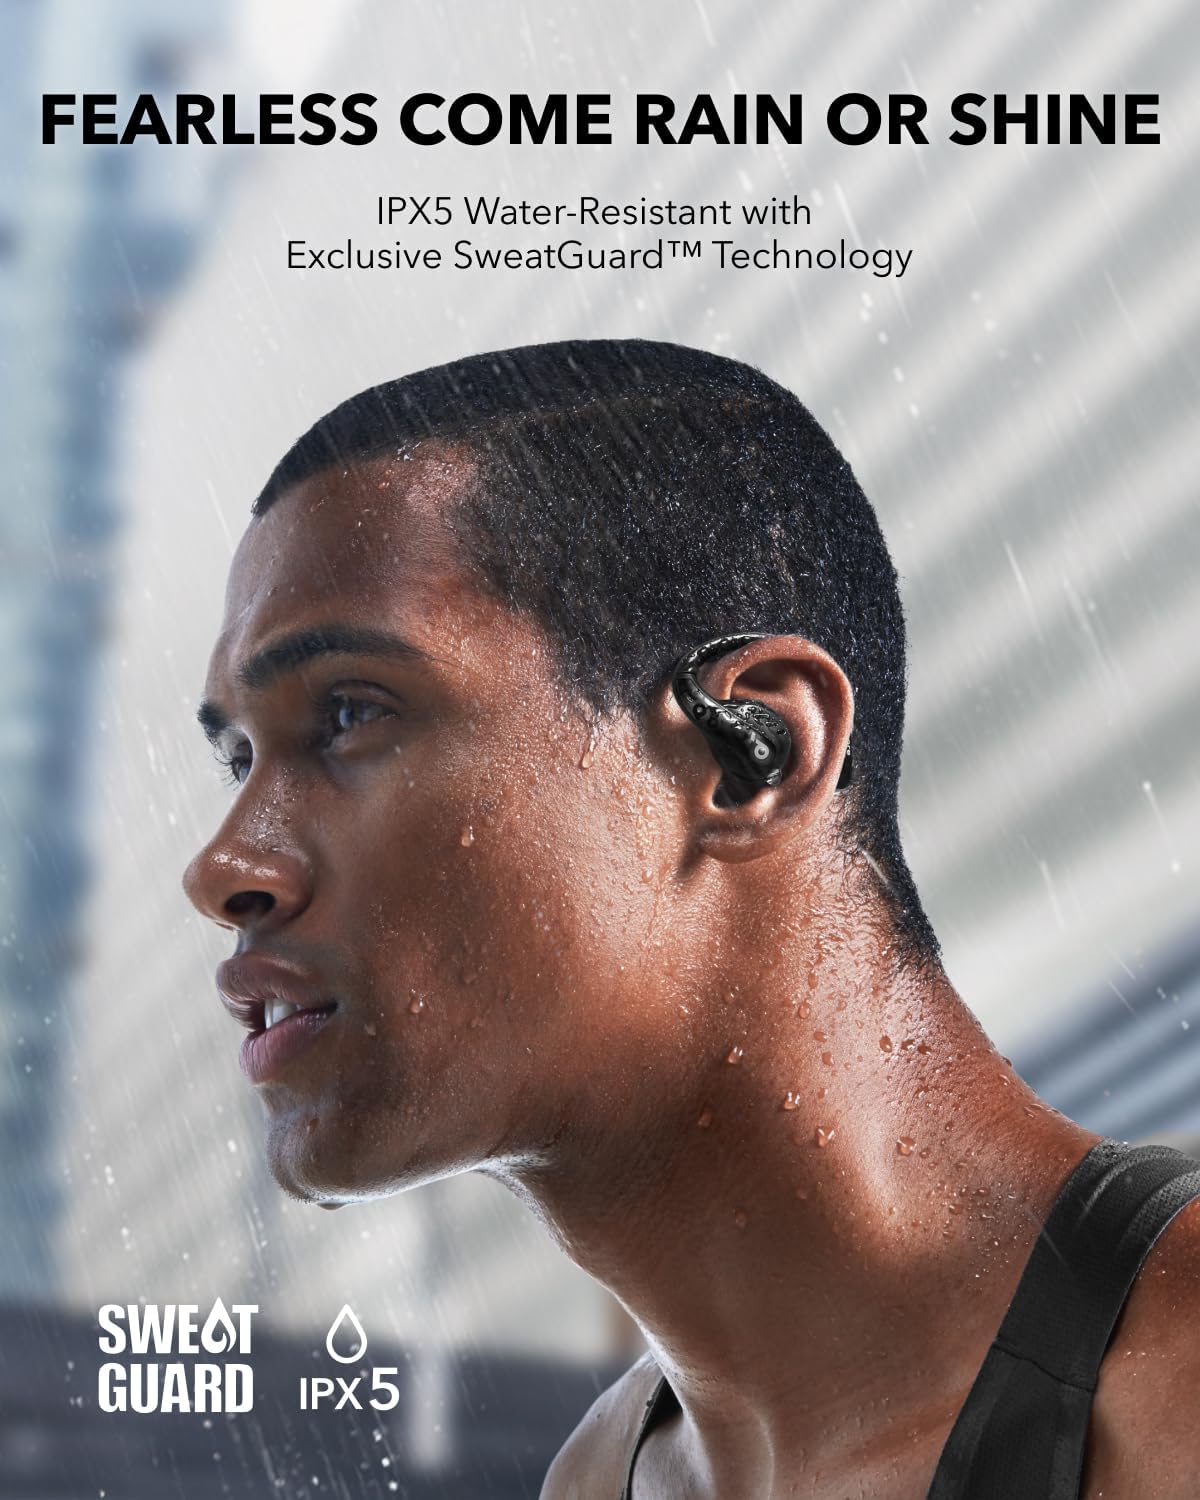 Anker Soundcore AeroFit Pro Open-Ear Headphones / Wireless Earbuds - Black